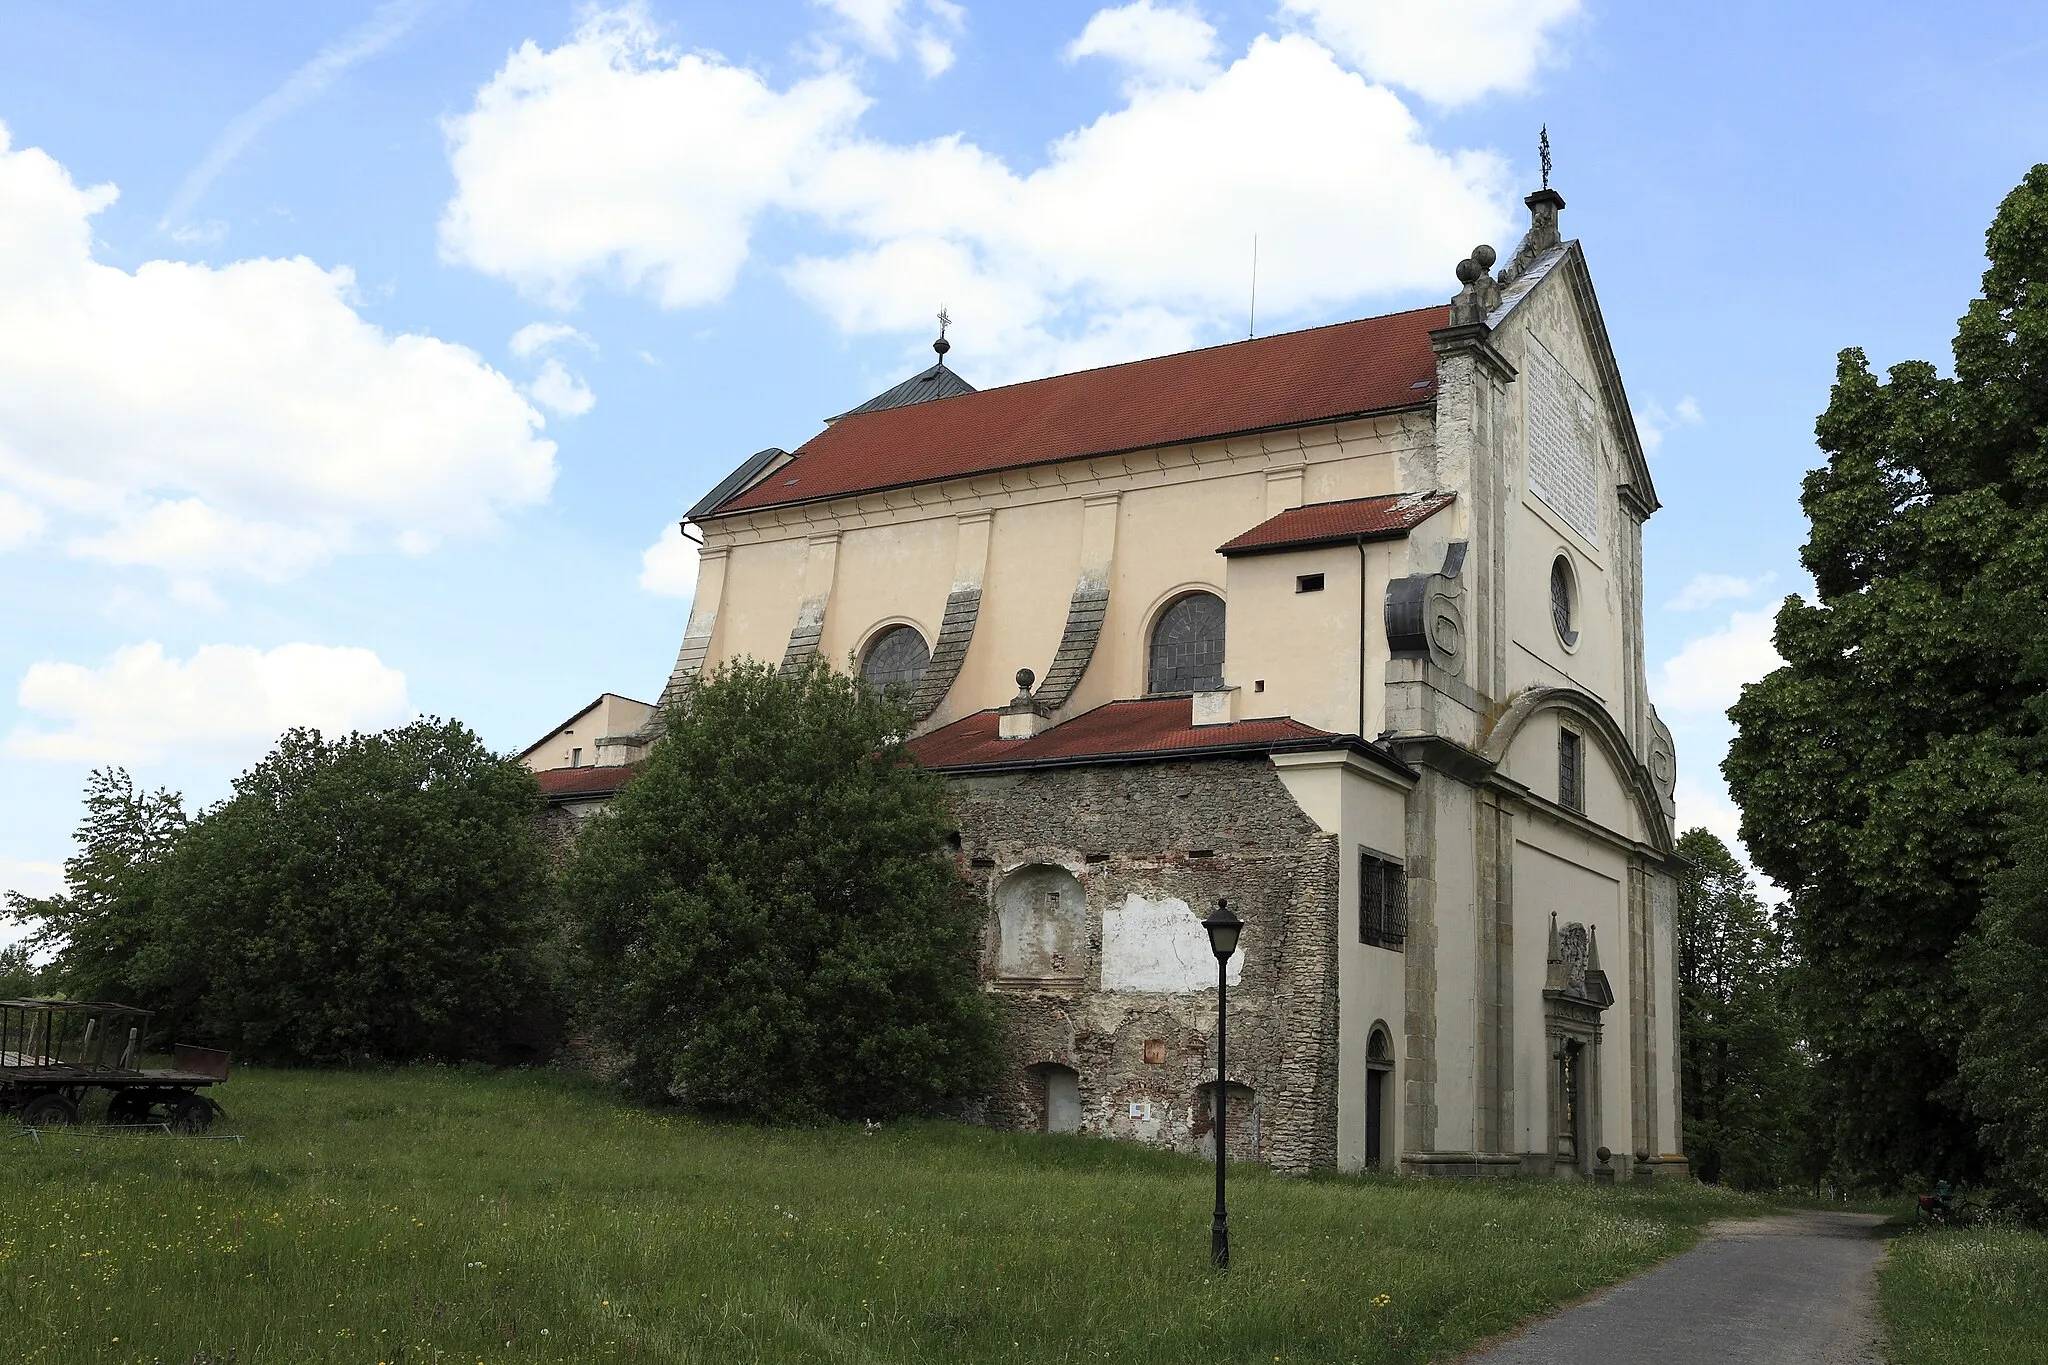 Photo showing: Ehemalige Klosterkirche des Paulinerklosters von Kloster, mit dem Ortsnamen war mal etwas einfallslos. Das Kloster wurde schon 1785 aufgehoben. 1959 sind die Klosterruinen abgebrochen worden, der Anschluss an die Kirche ist noch erkennbar.